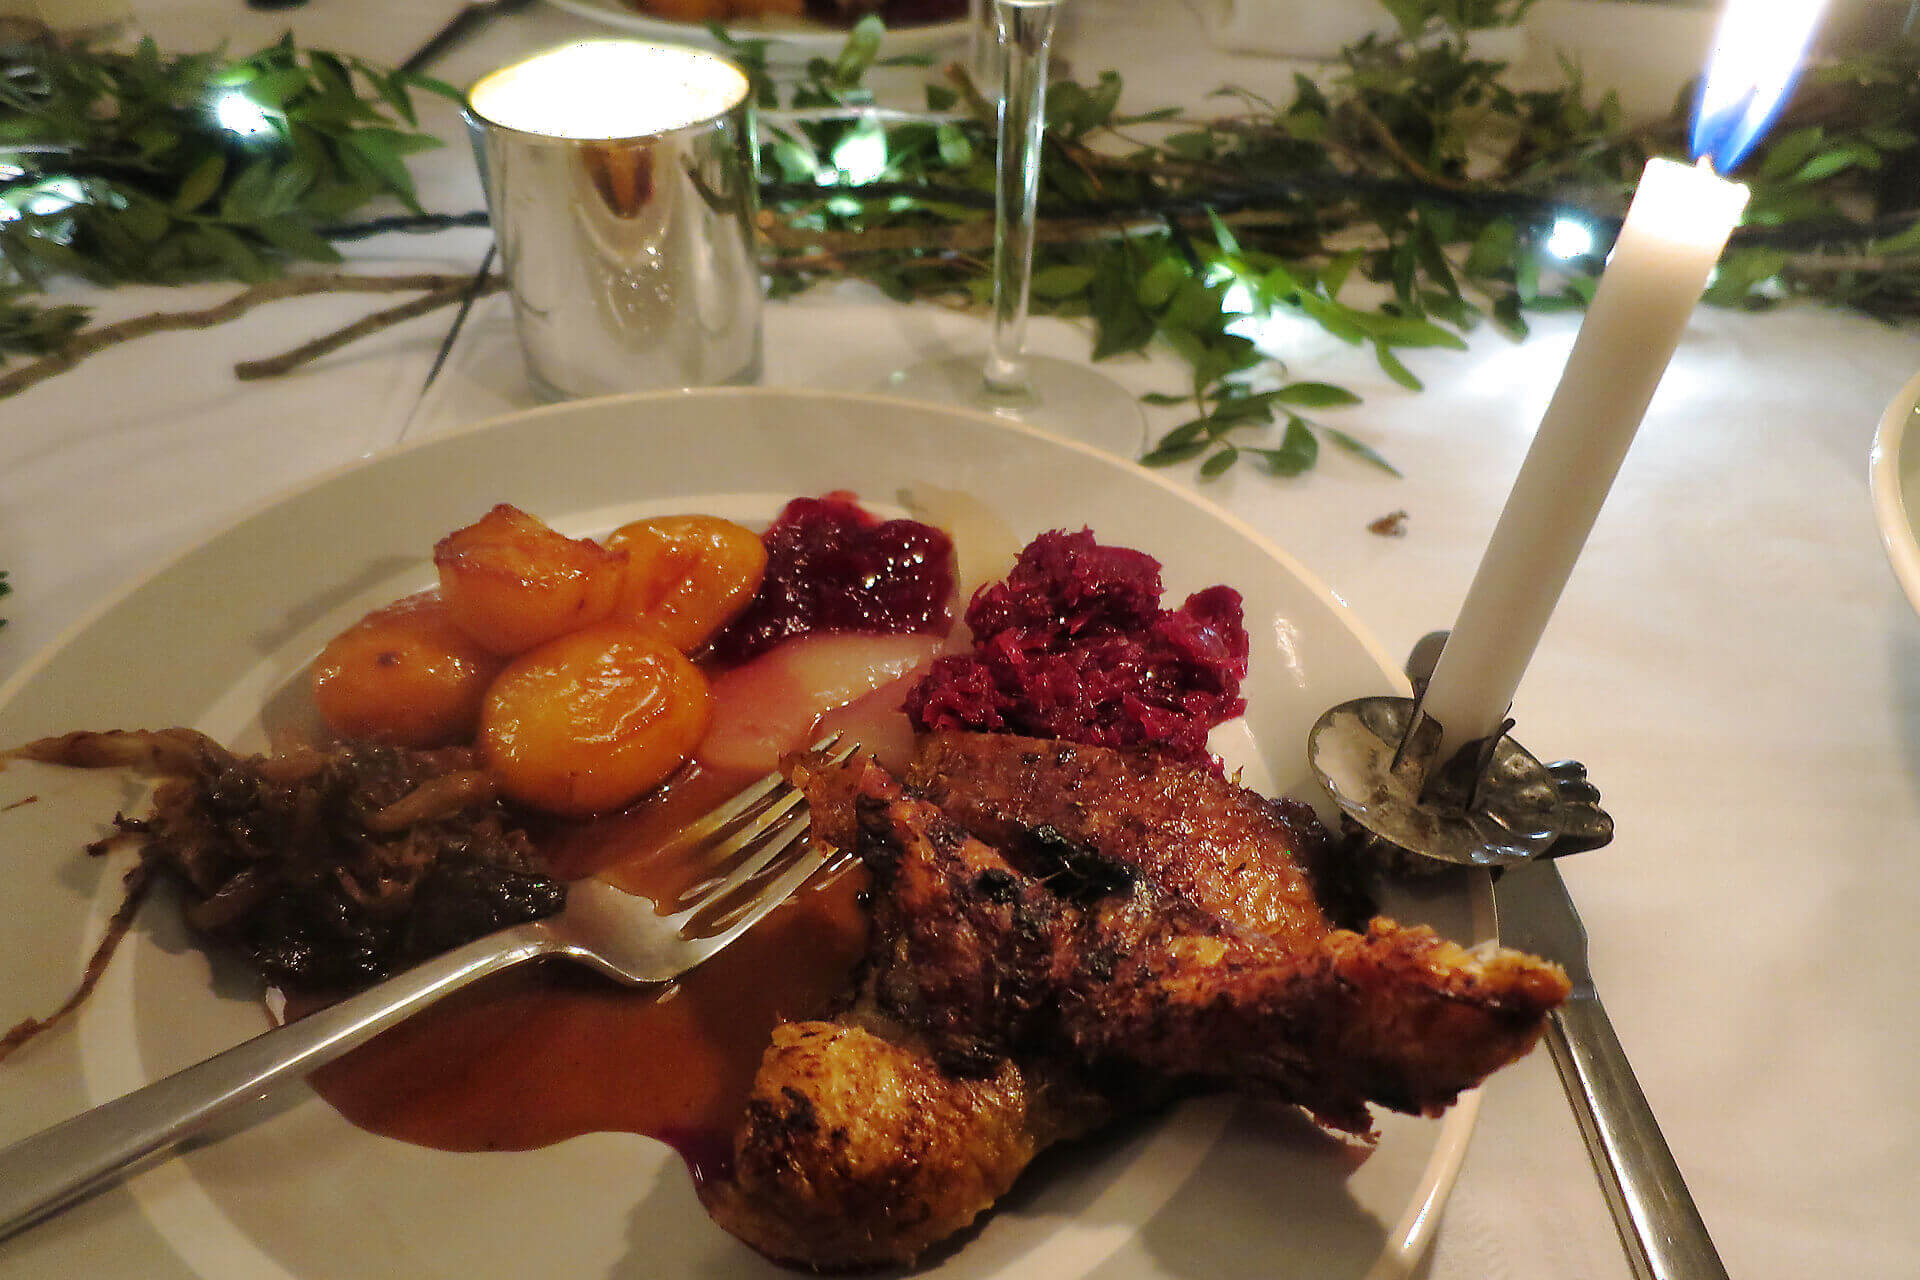 Danish Christmas Eve dinner